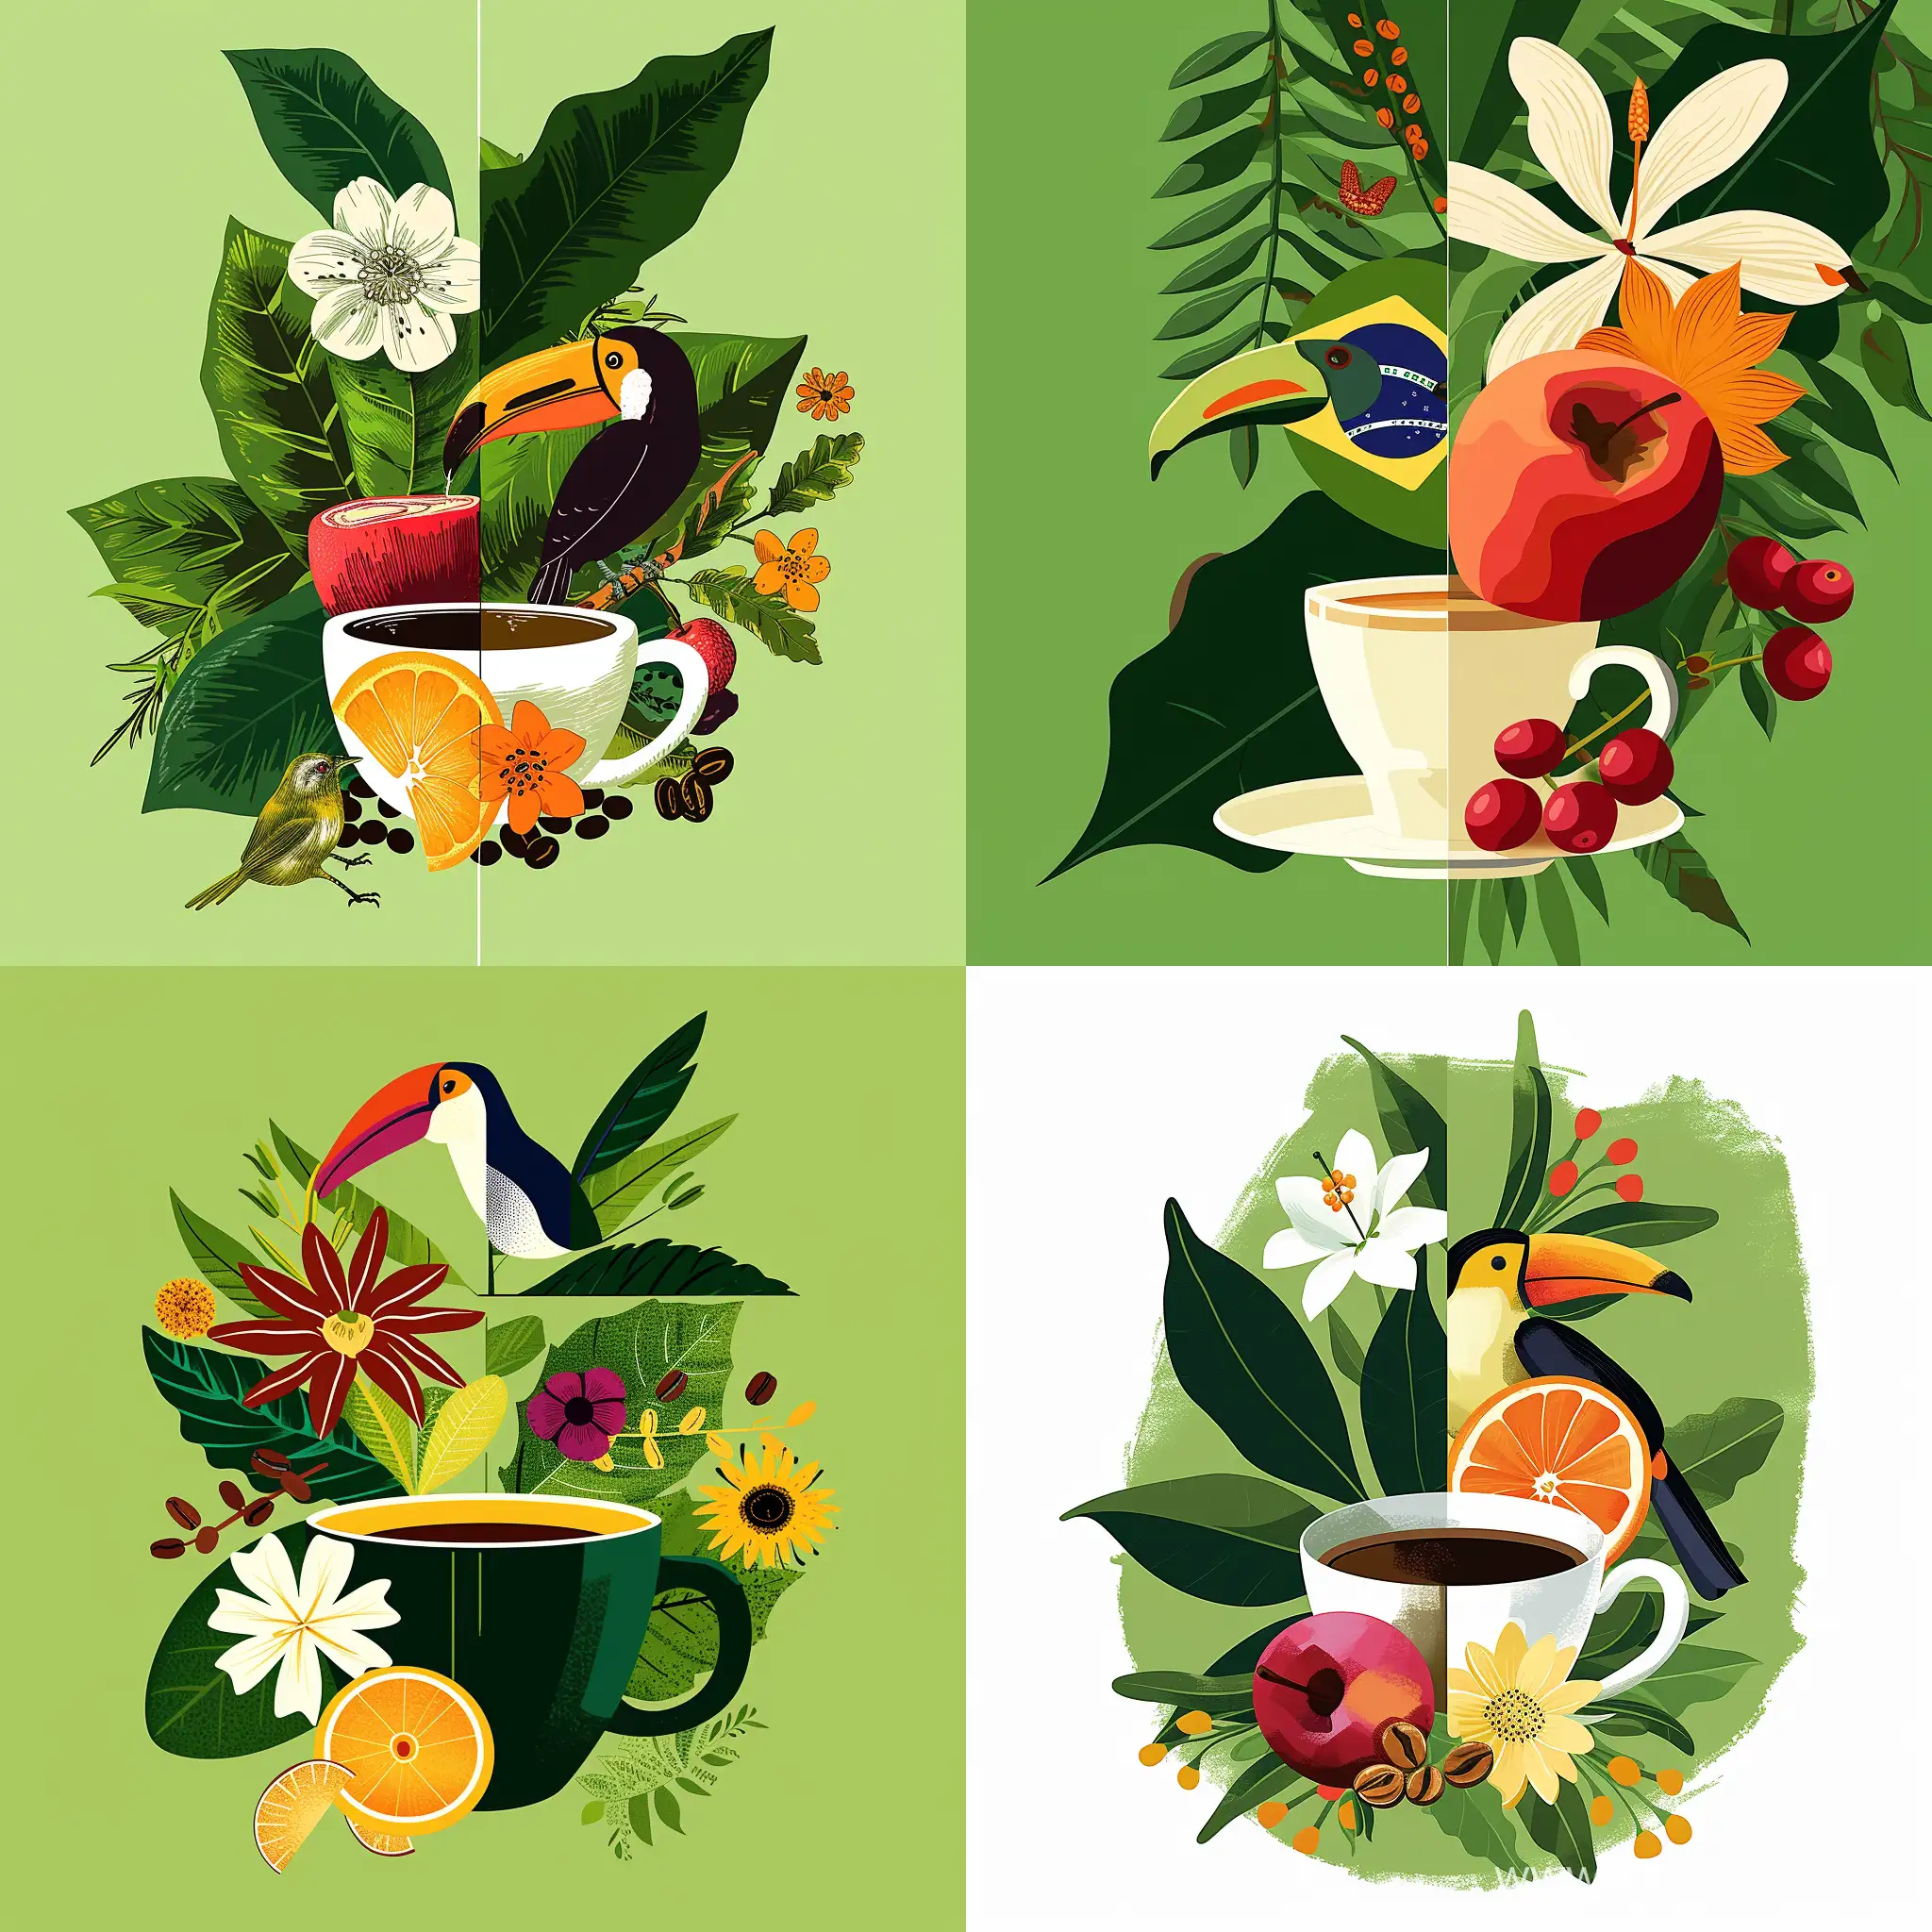 Иллюстрация кофе в чашке, символы Бразилии, природа, птицы и животные Бразилии, кофе - serf https://cdn.dribbble.com/users/4558942/screenshots/17325164/media/78859b6ffc9a5a7bcb95a120b0c50b0f.jpg?resize=1000x750&vertical=center